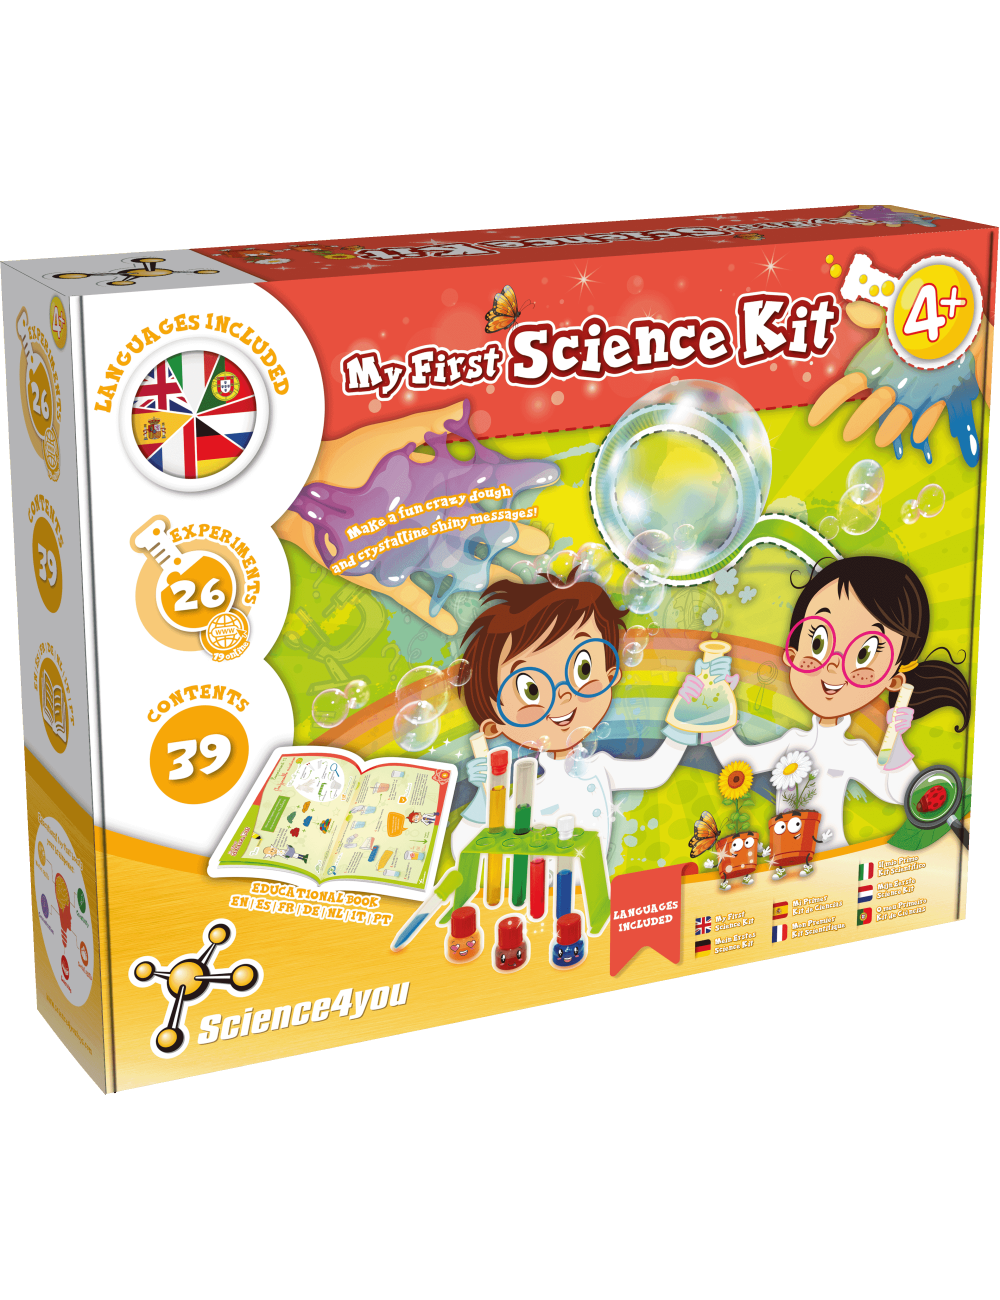 Mon premier kit de chimie Science 4 you